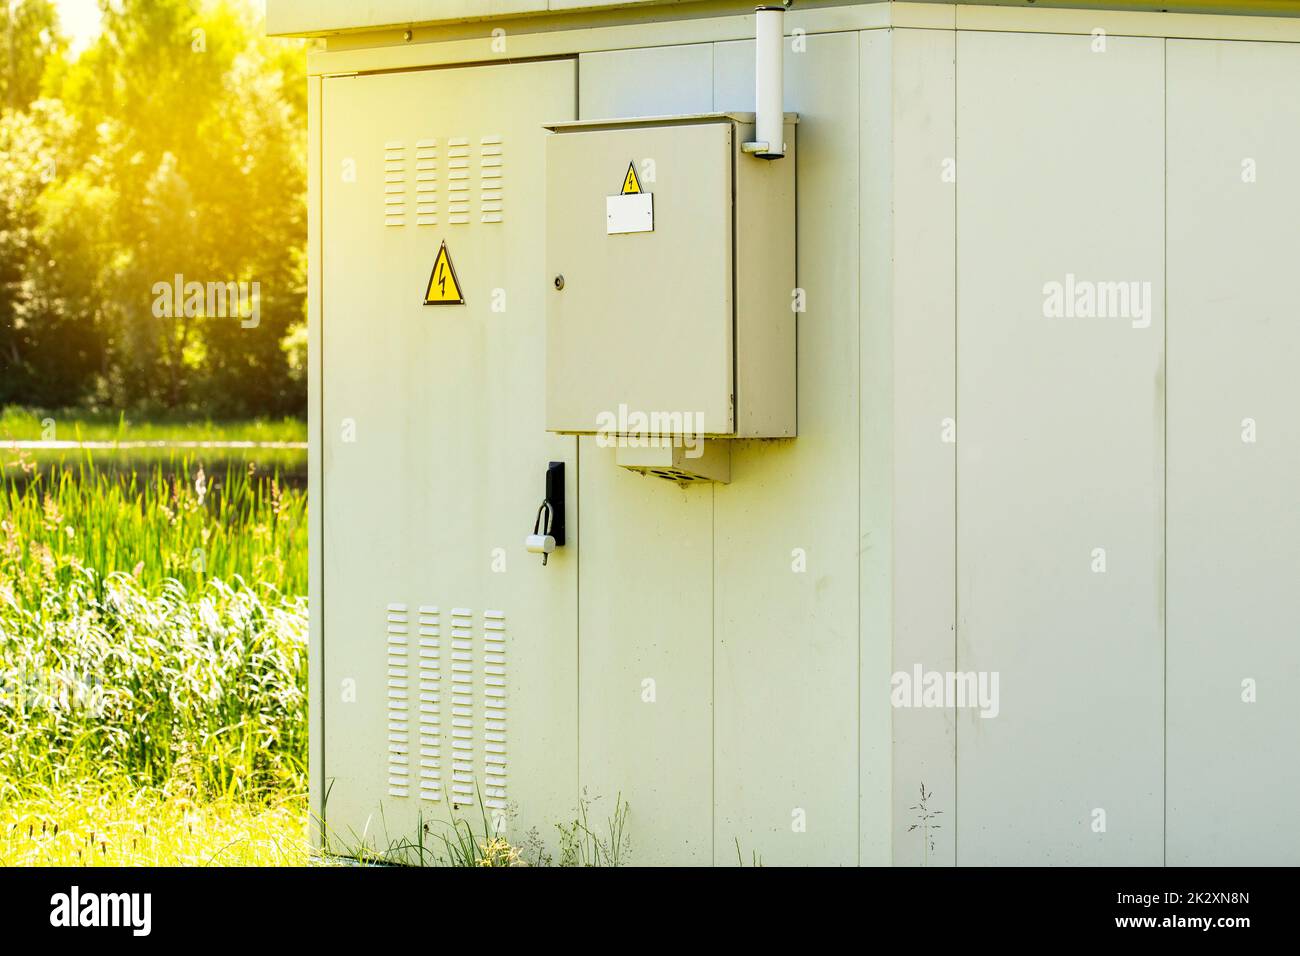 Armoire de distribution électrique extérieure avec lumière du soleil matinale Banque D'Images